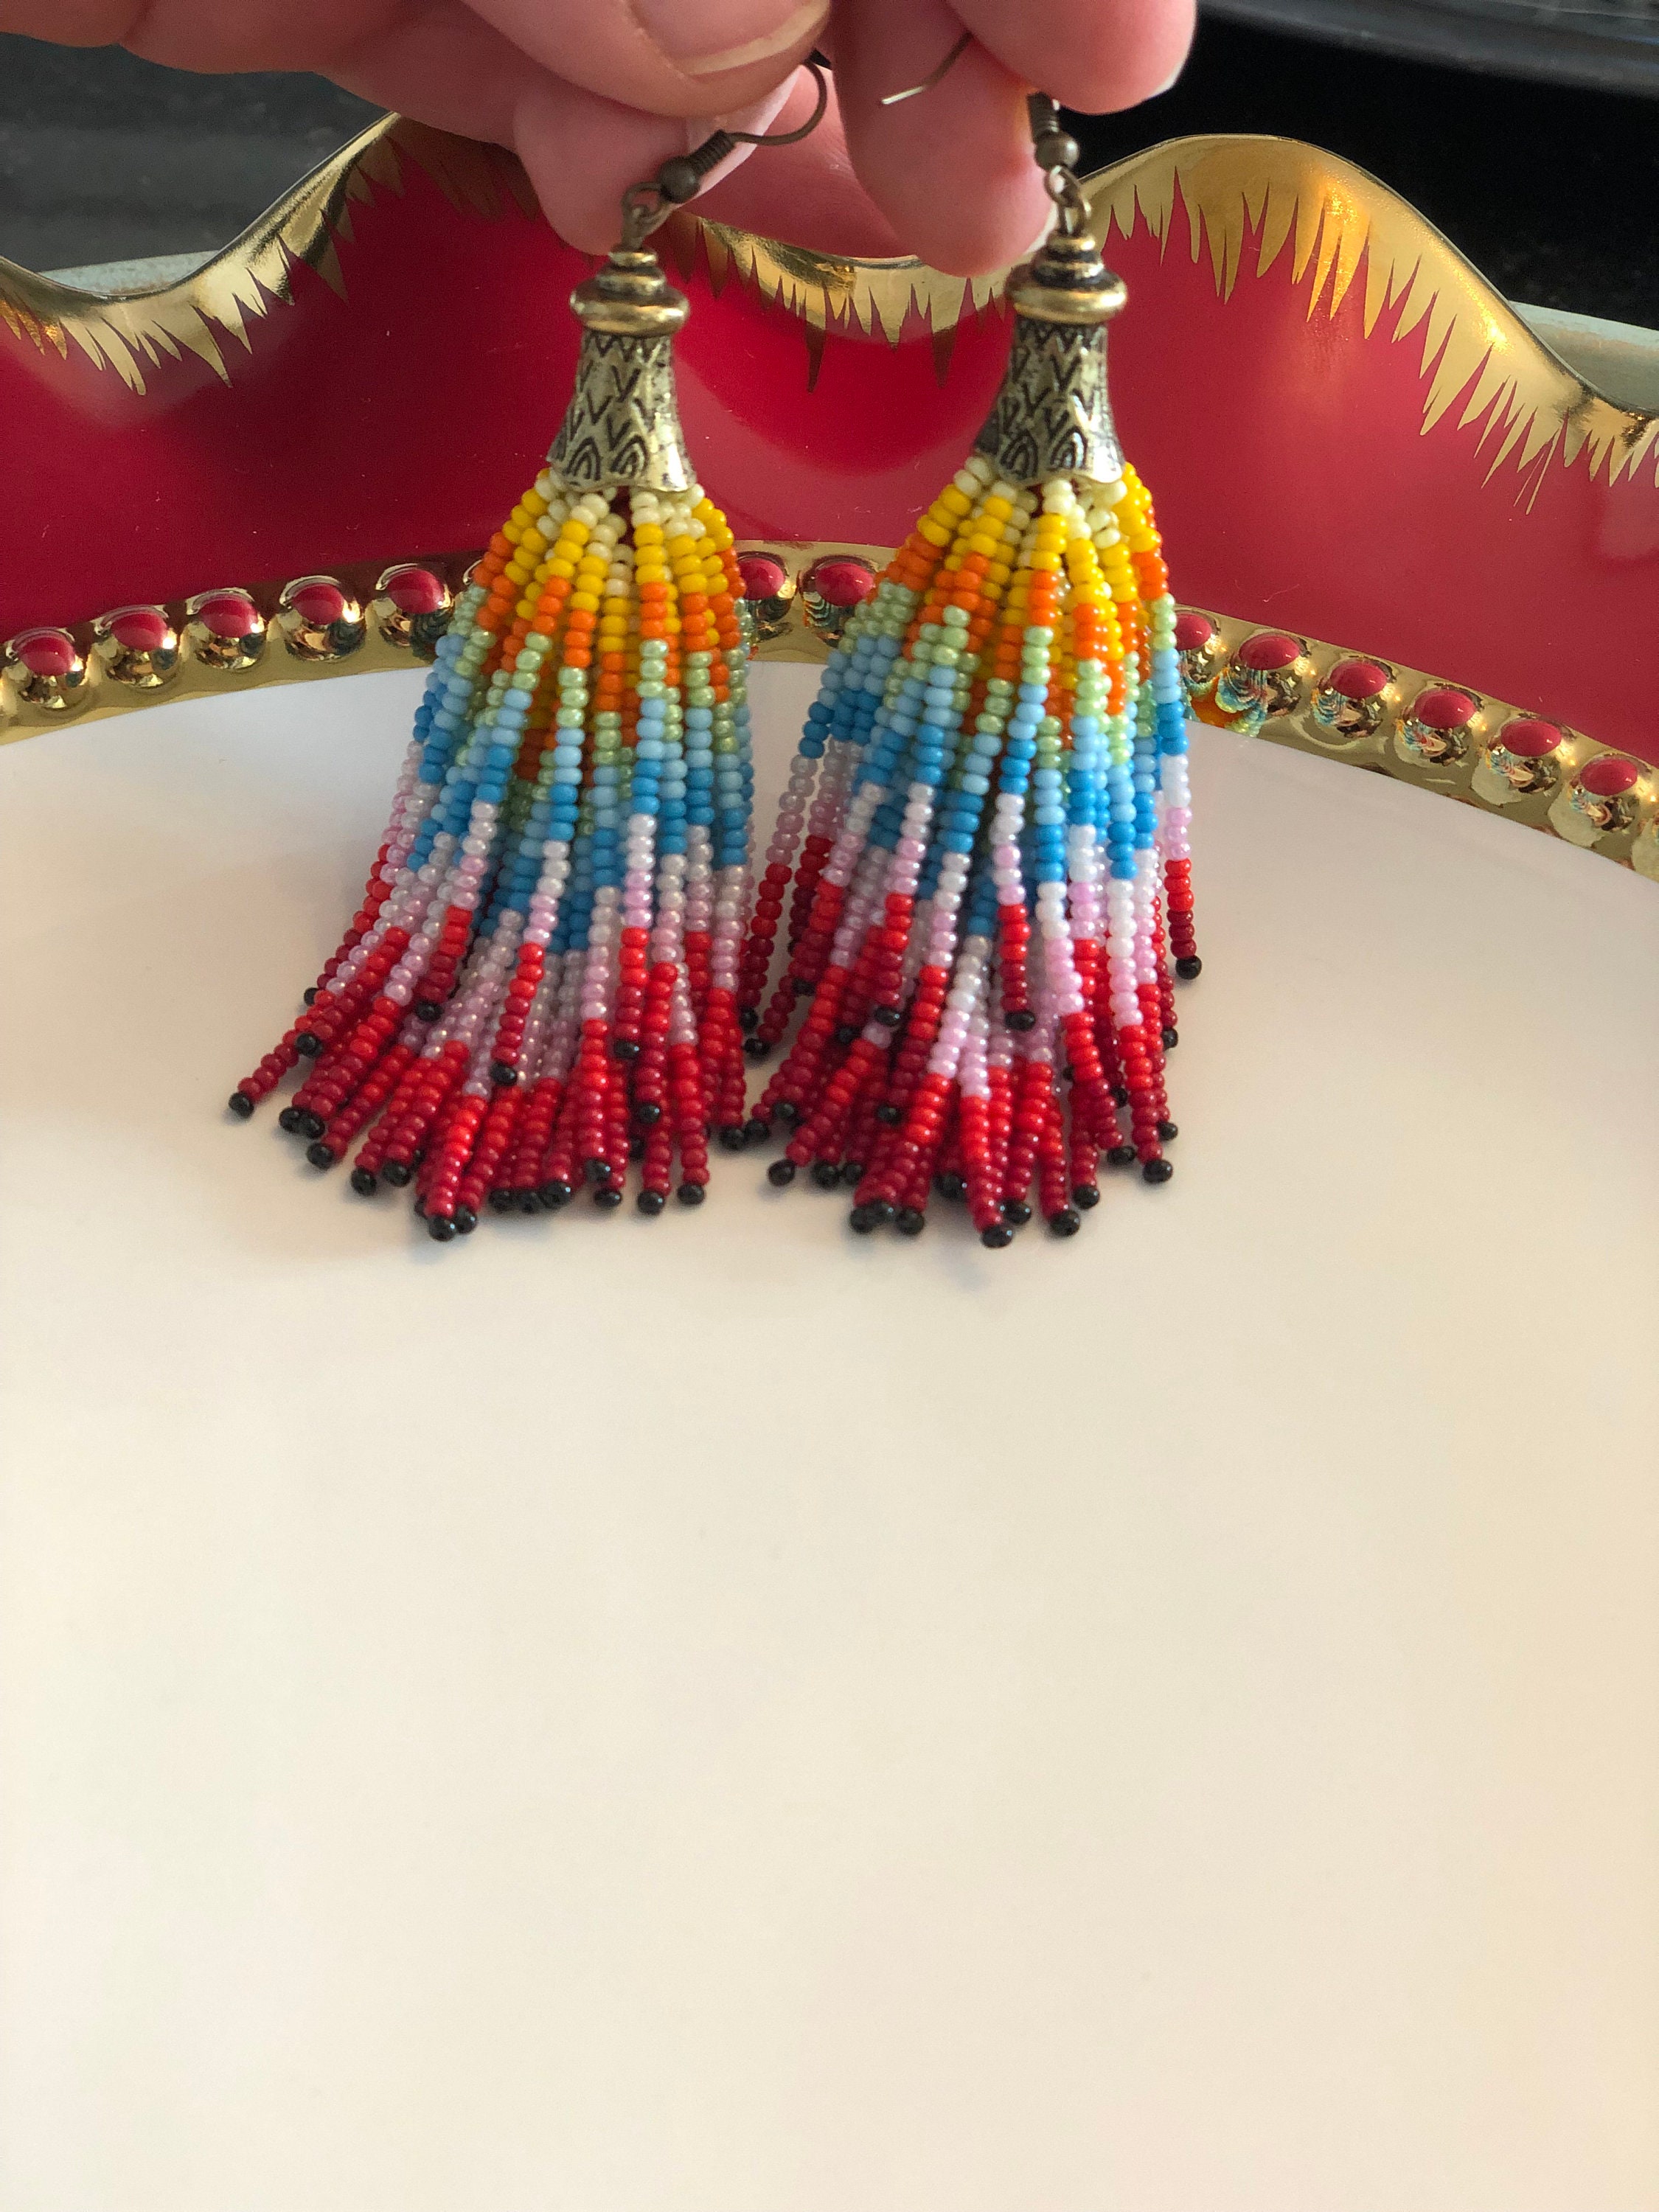 Beaded Fringe Rainbow Earrings Cute Chic Earrings Great Size - Etsy